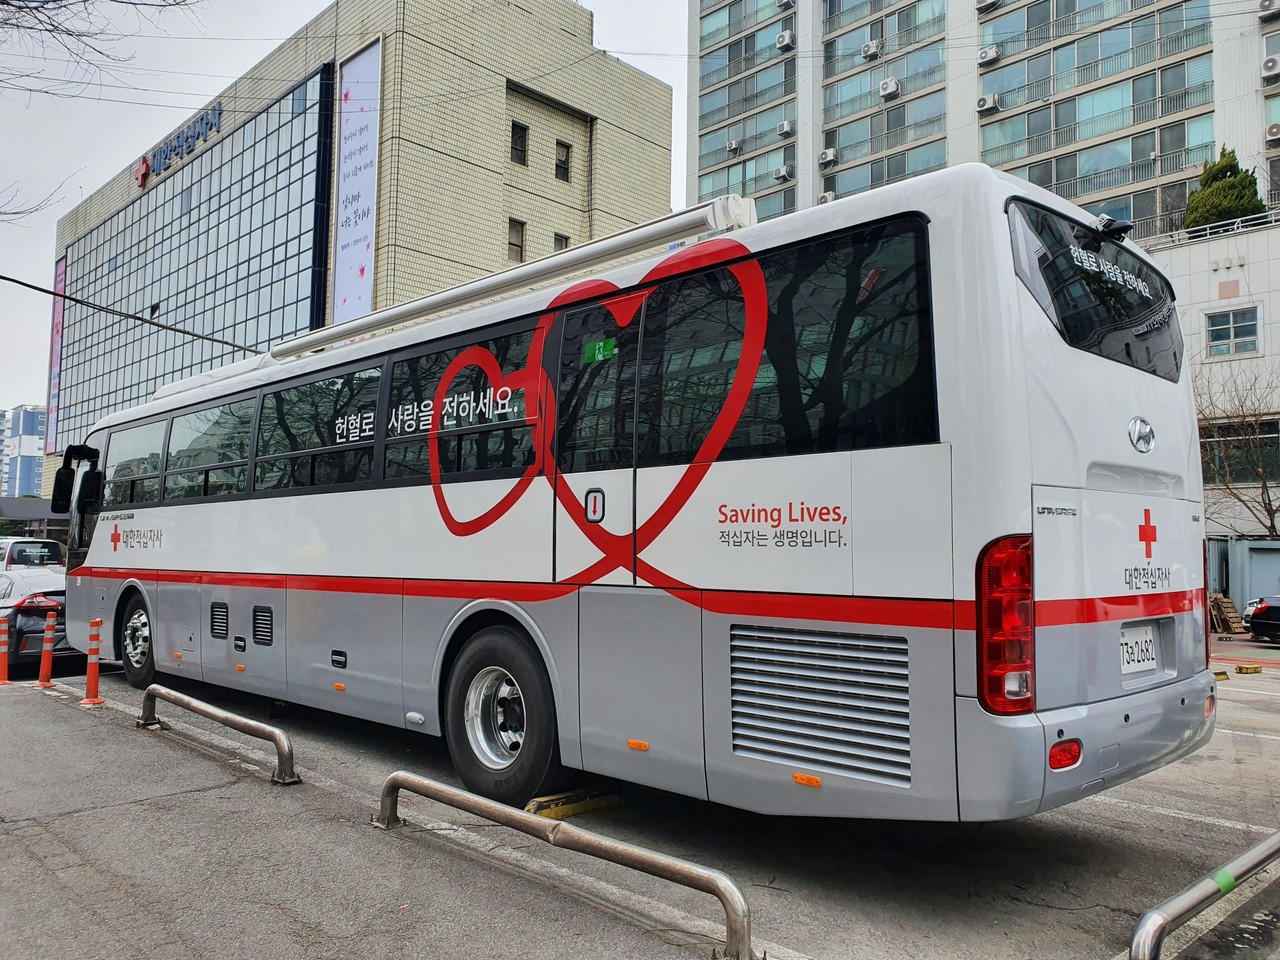 사진설명 : 삼성에서 기부한 100억여 원은 혈액 부족 문제 해소를 위한 신형 헌혈버스 제작에 사용될 예정이다. (대한적십자사 헌혈버스 예시)